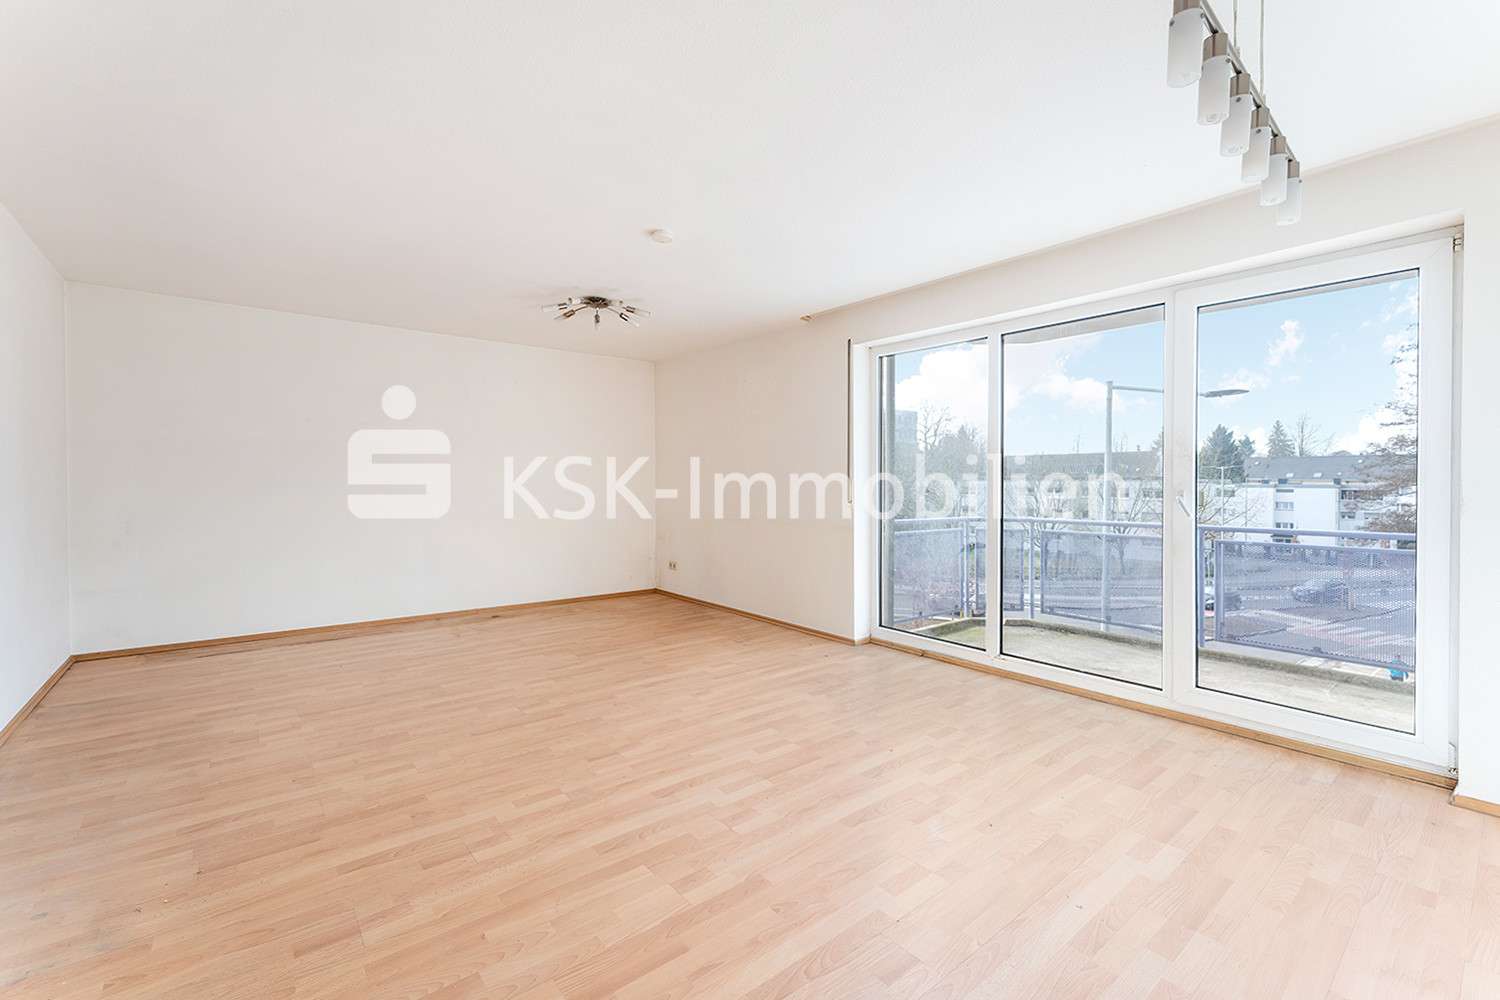 112625 Wohnzimmer - Etagenwohnung in 51379 Leverkusen mit 67m² kaufen